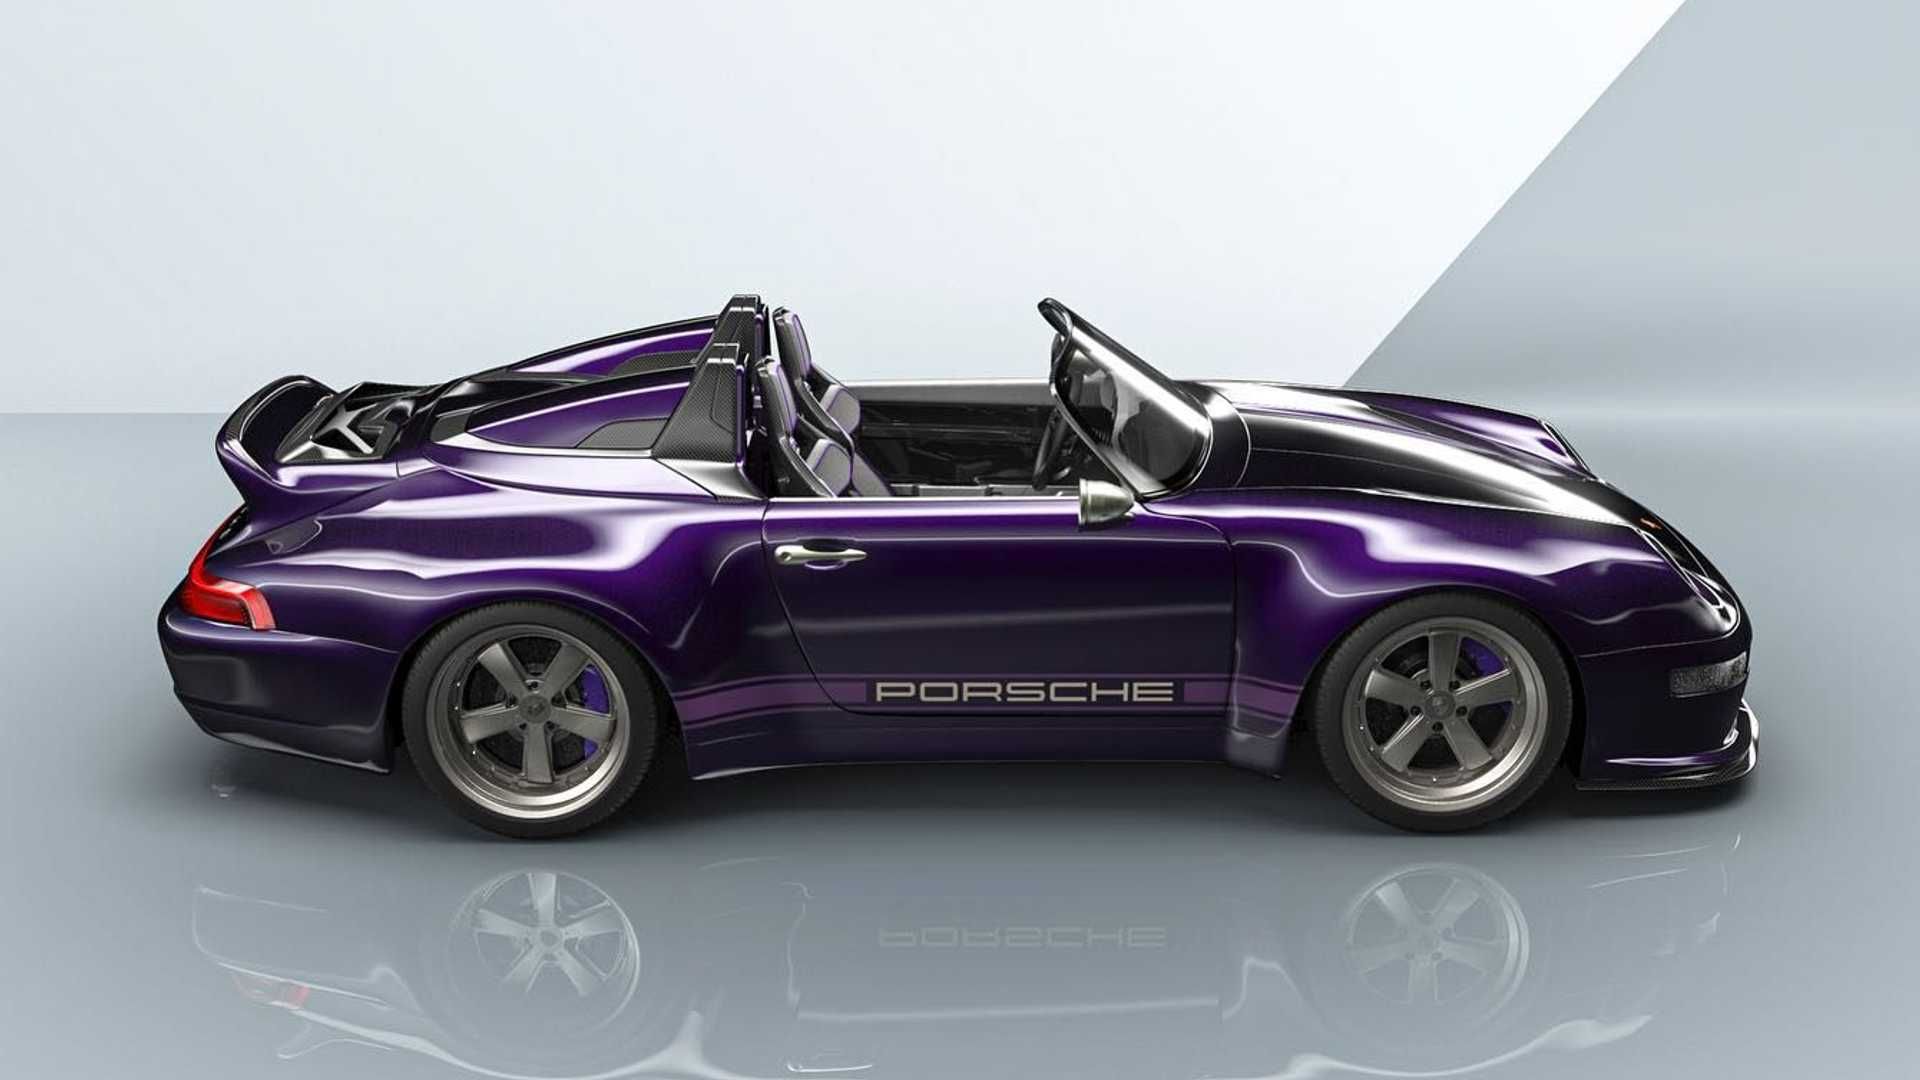 gunther-werks-purple-porsche-993-speedster-commission-passenger-side